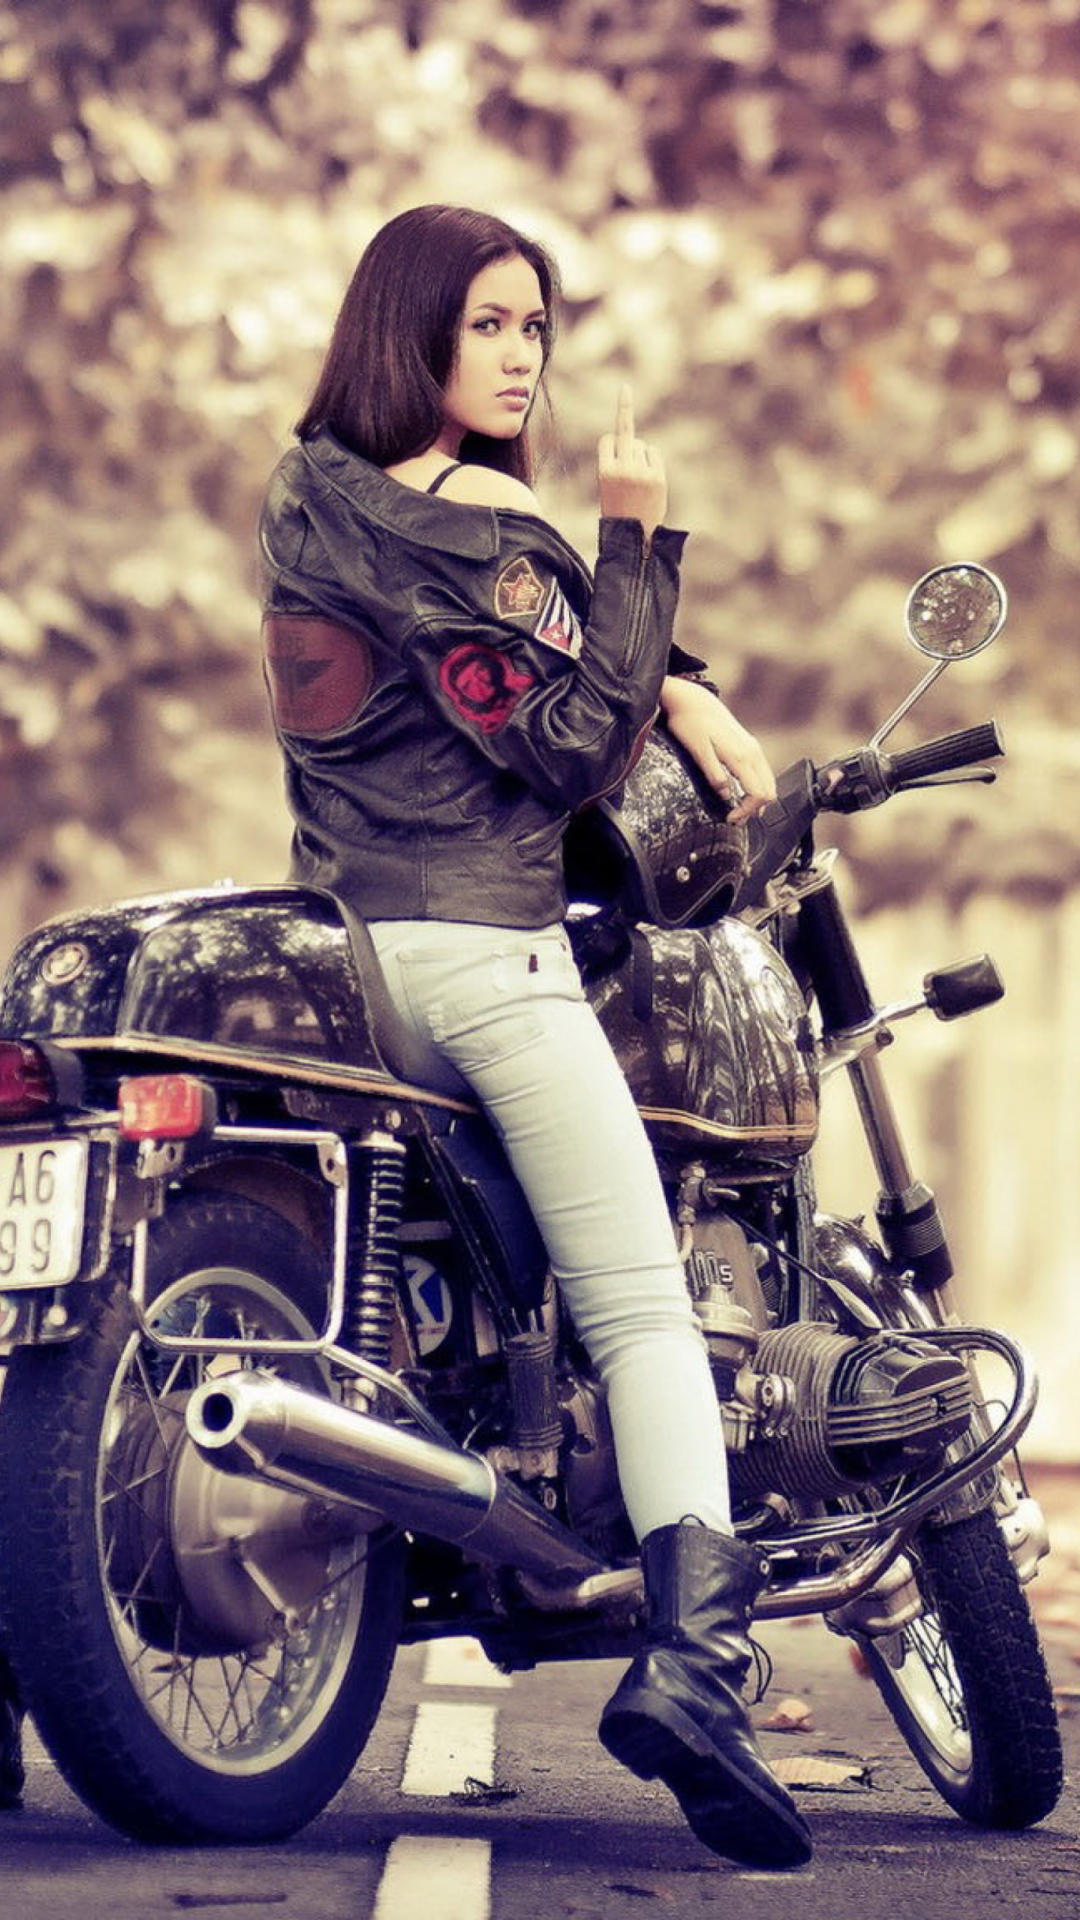 Moto Girl wallpaper 1080x1920